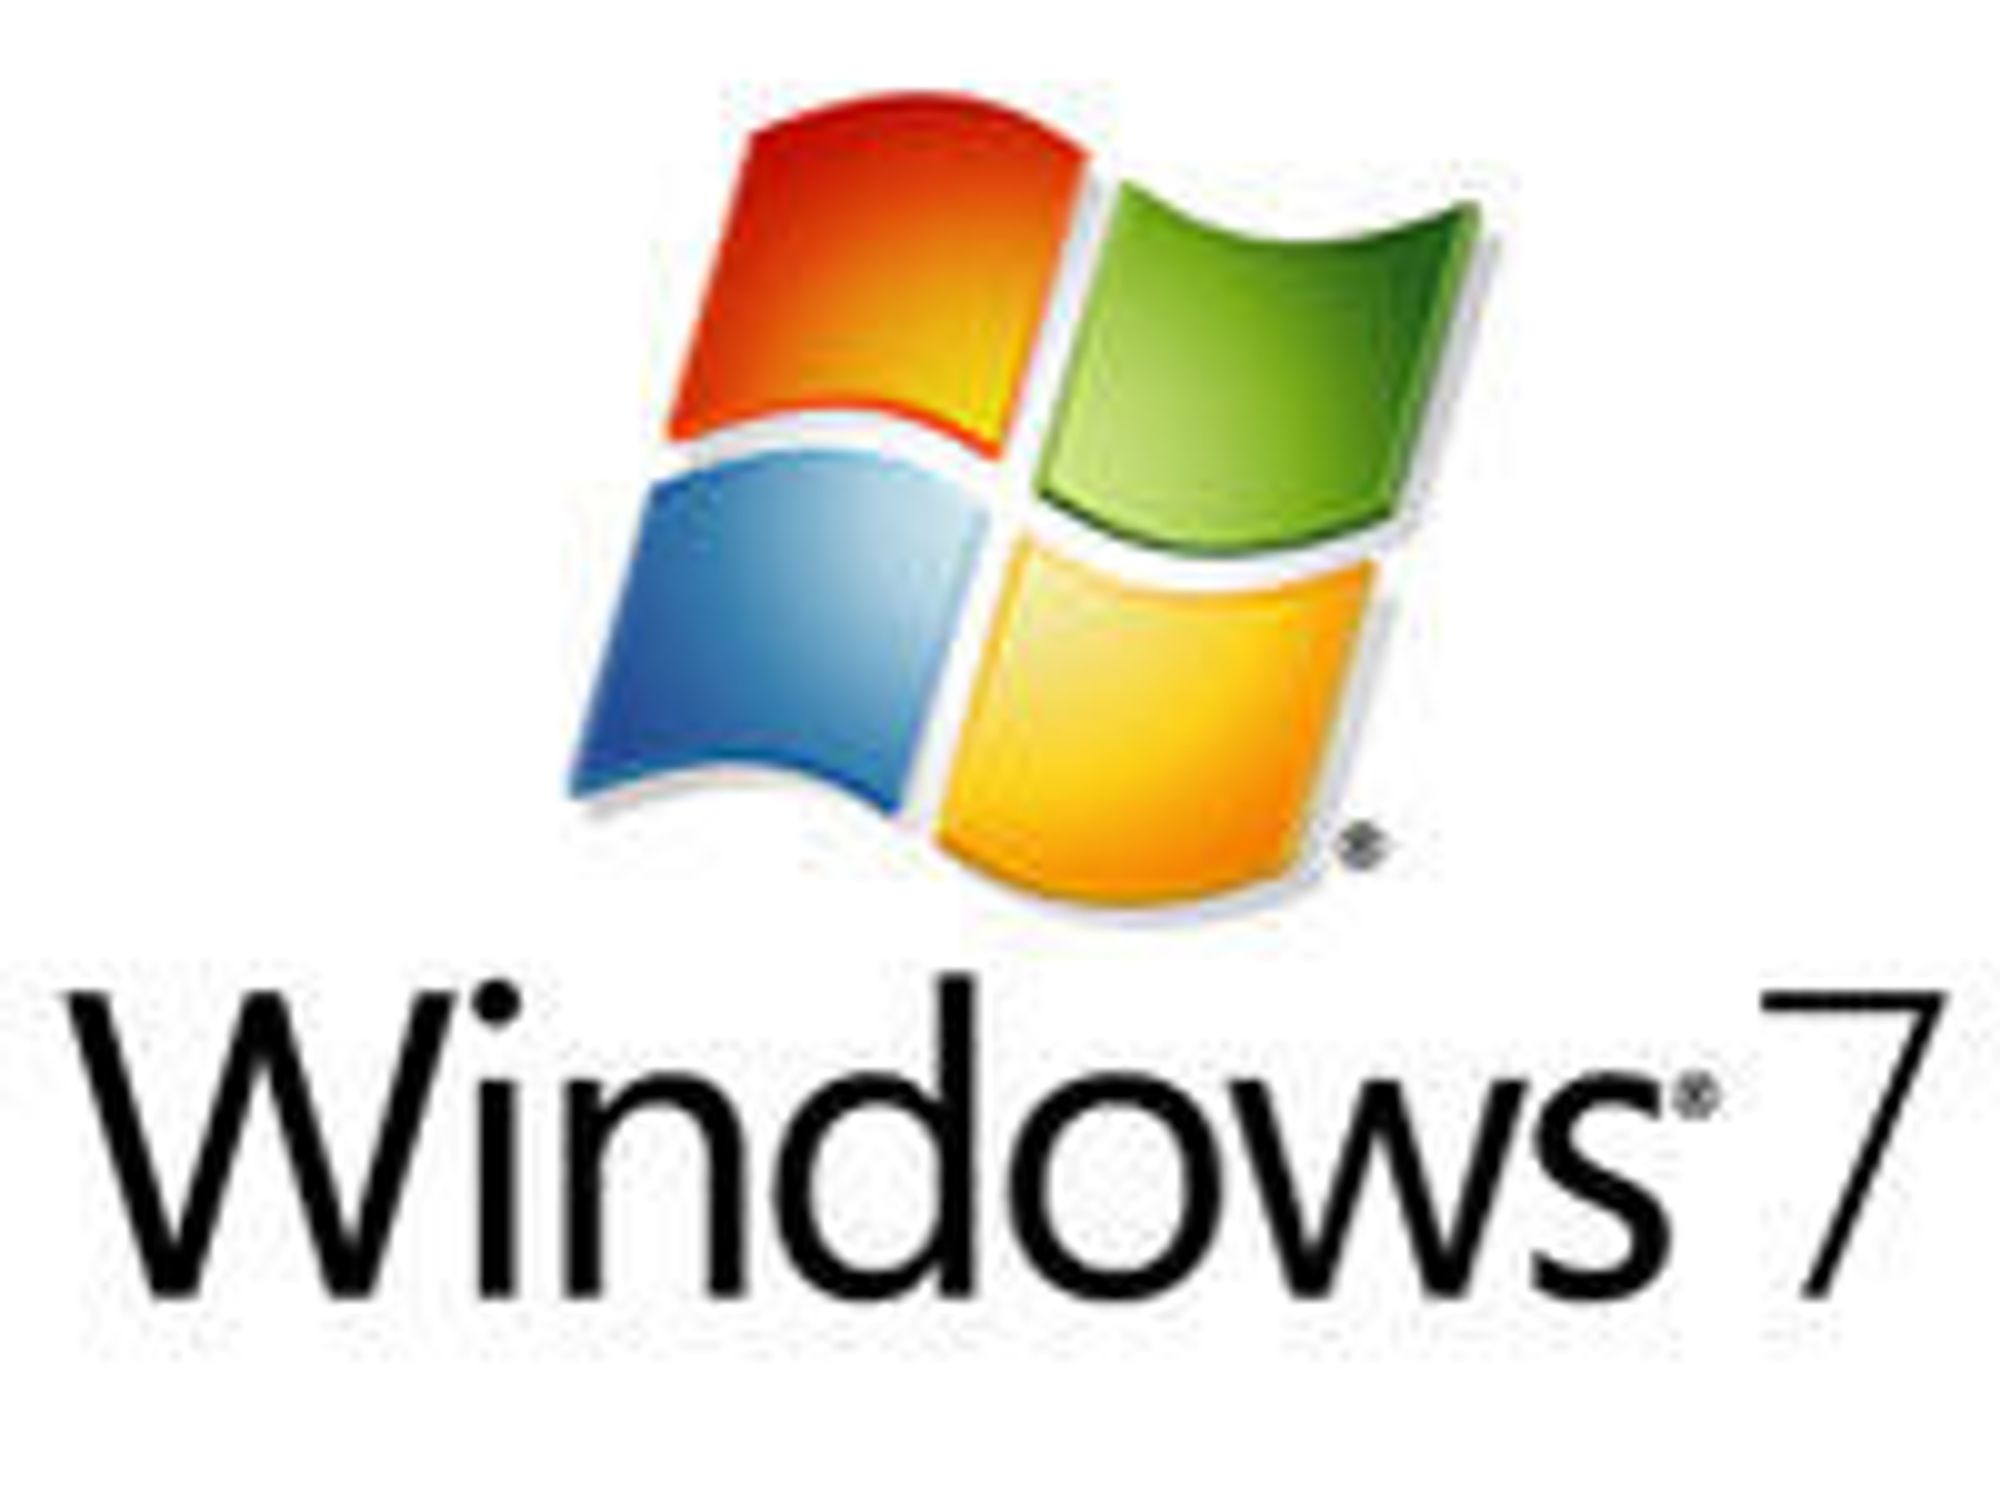 Har solgt 350 millioner Windows 7